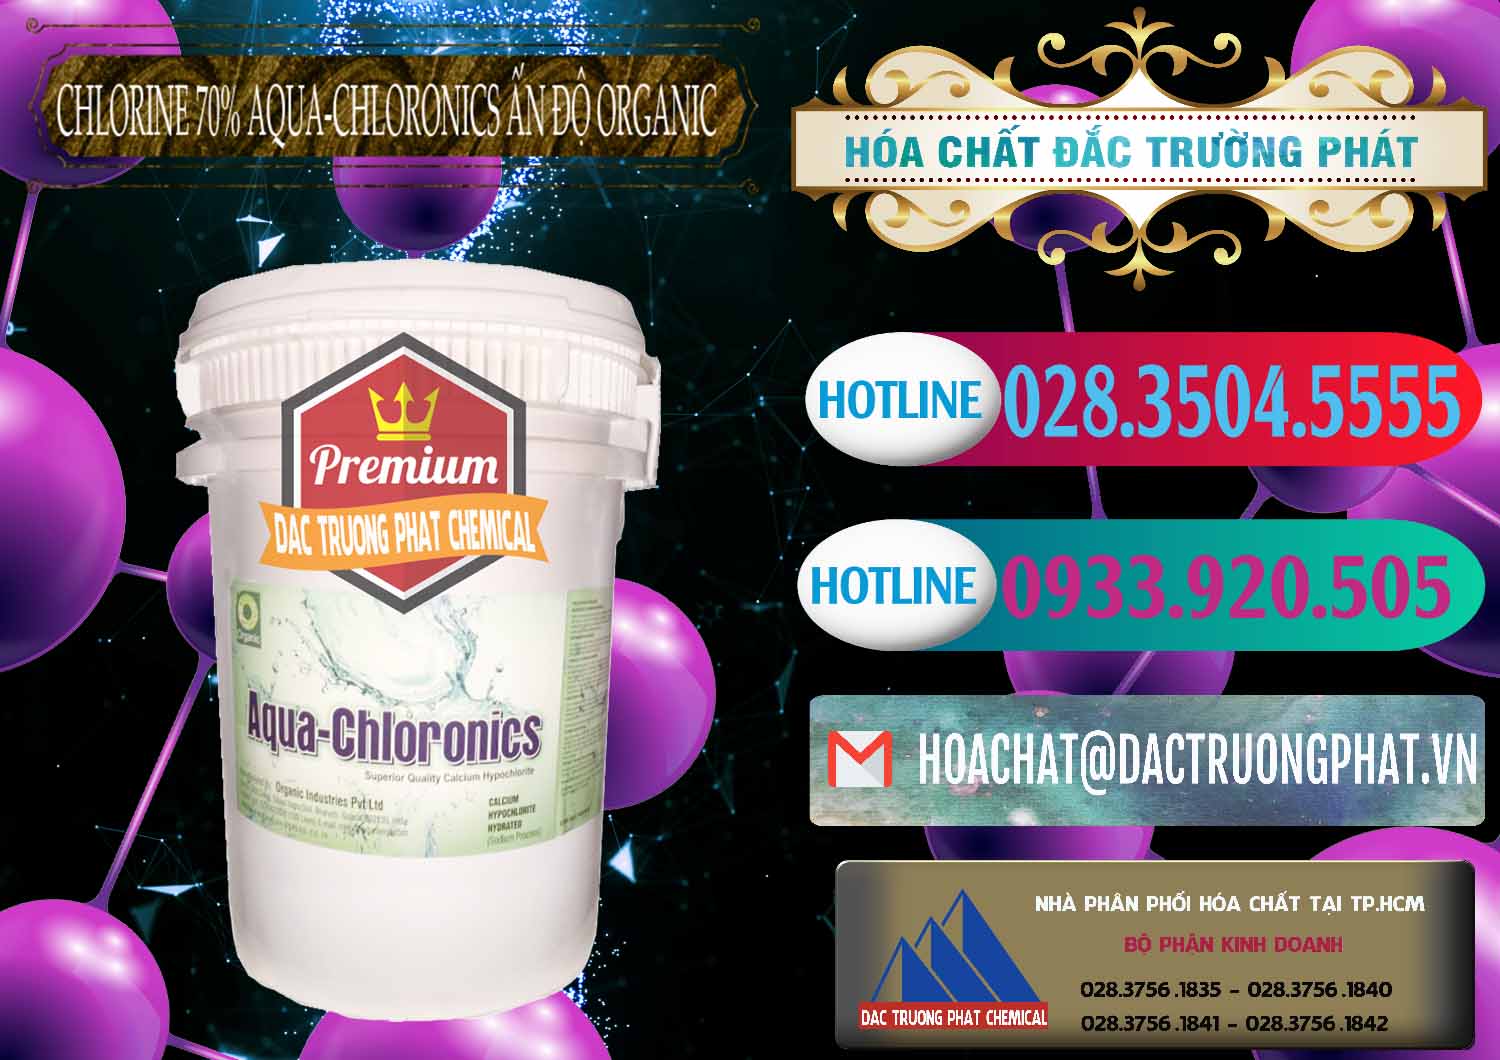 Đơn vị chuyên phân phối & bán Chlorine – Clorin 70% Aqua-Chloronics Ấn Độ Organic India - 0211 - Công ty chuyên kinh doanh và phân phối hóa chất tại TP.HCM - truongphat.vn